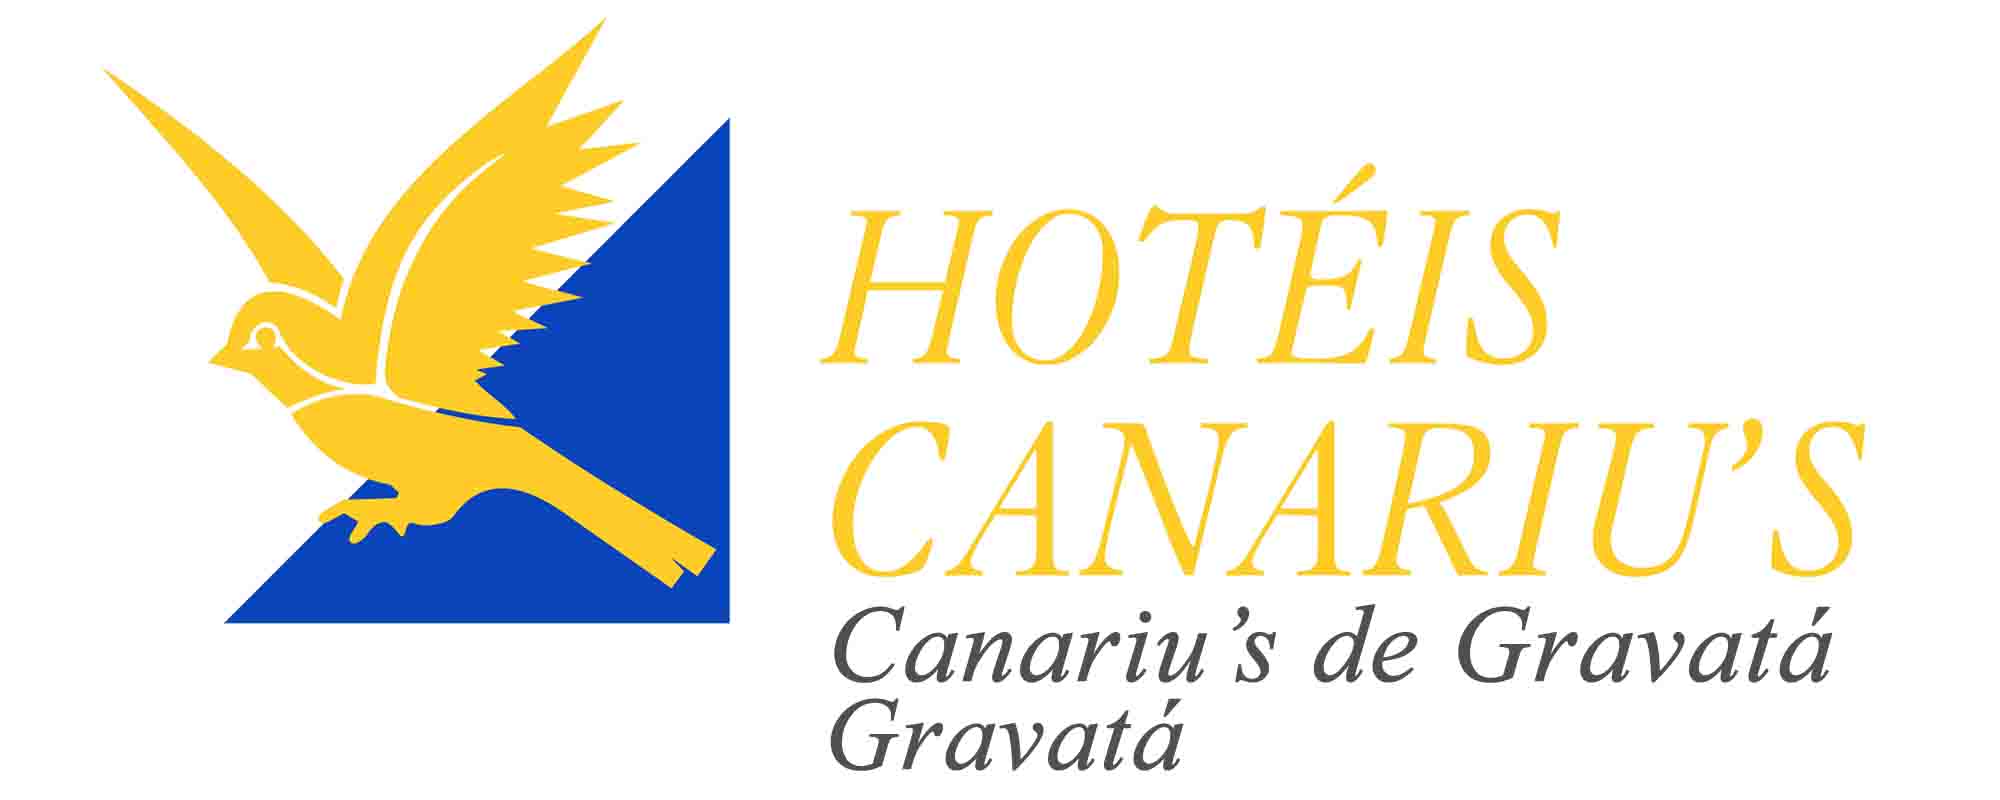 HOTEL CANARIU’S GRAVATÁ